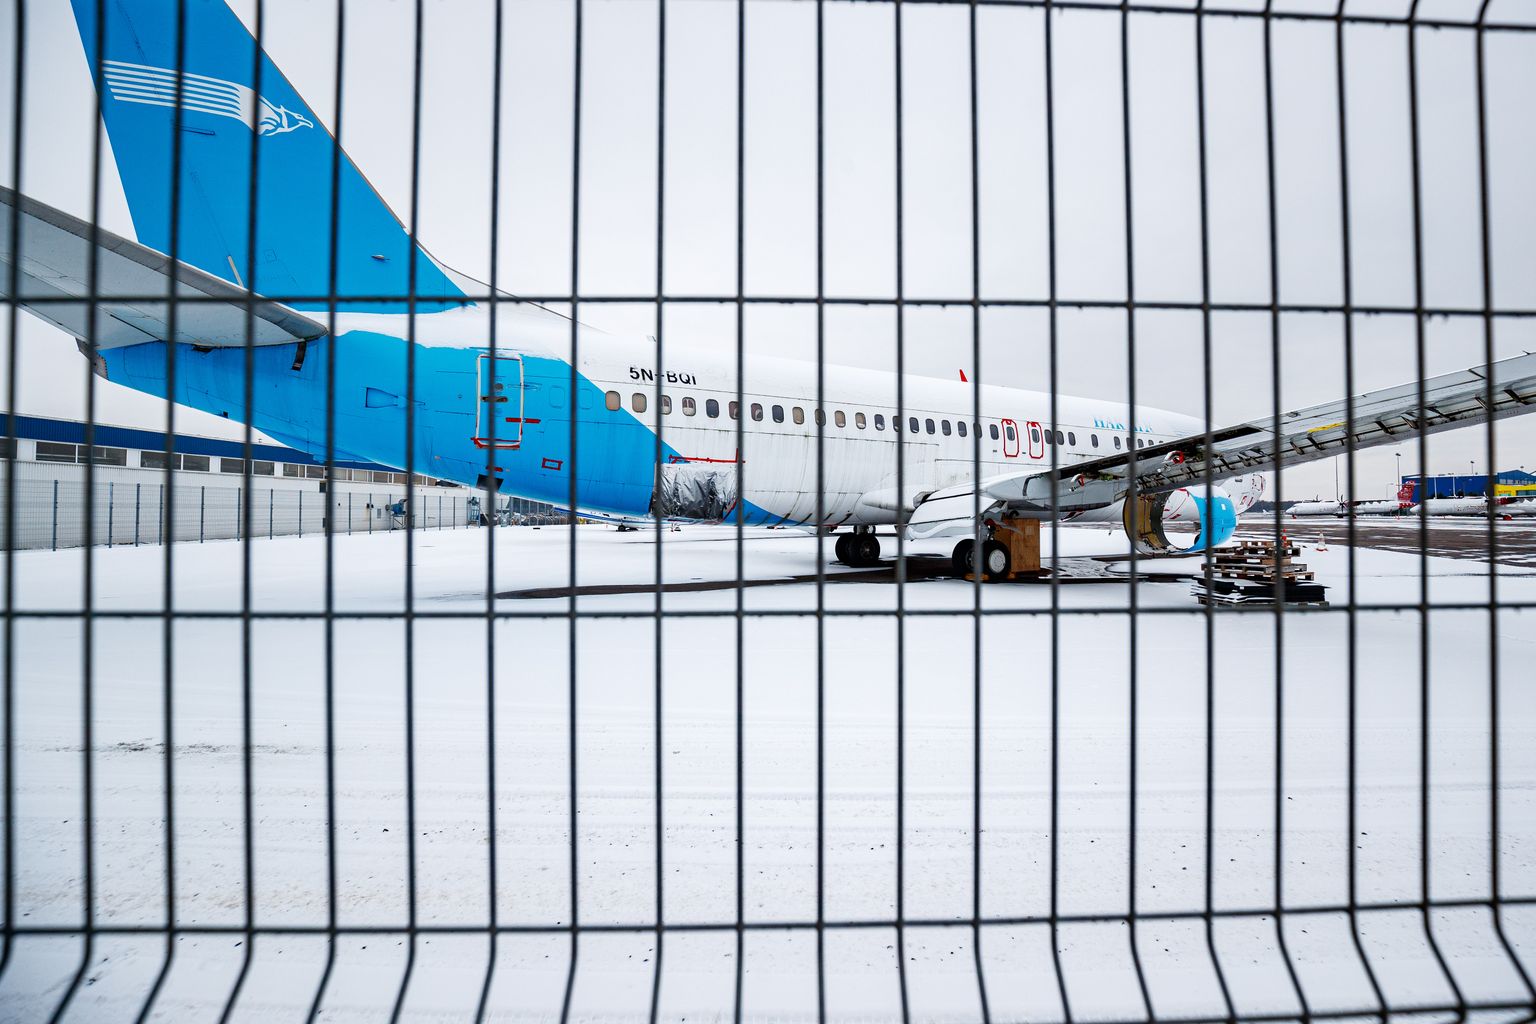 Nigeeria lennufirma Hak Air Boeing 737-400 ei lenda Tallinnast vähemasti mõnda aega kuhugi. Ajakirjanduses ilmunu põhjal läheb õhusõiduk 10. detsembril 183 772,9 eurose alghinnaga Oksjonikeskuses enampakkumisele.